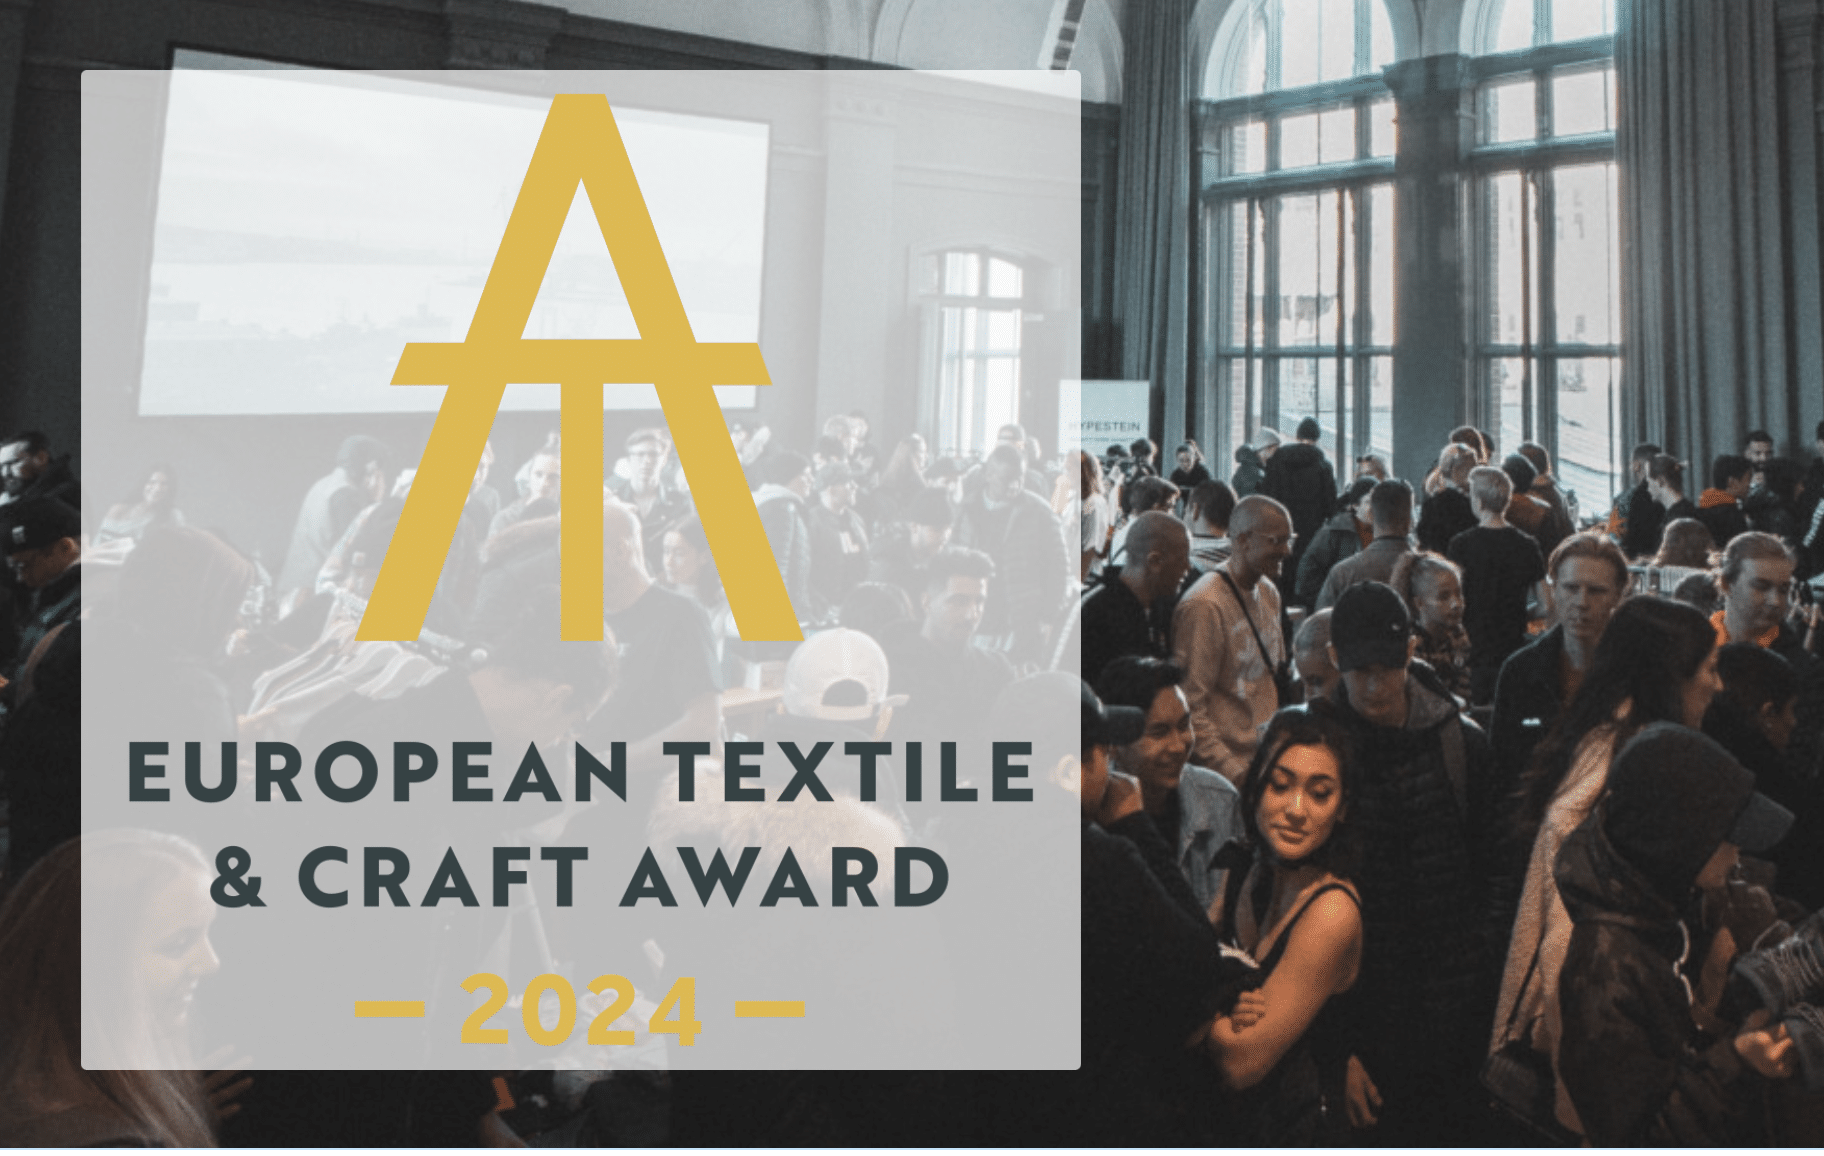 Jetzt bewerben! – Textile & Craft Award wird von der Europäischen Textilakademie vergeben. Foto: ttps://eurotextileacademy.com